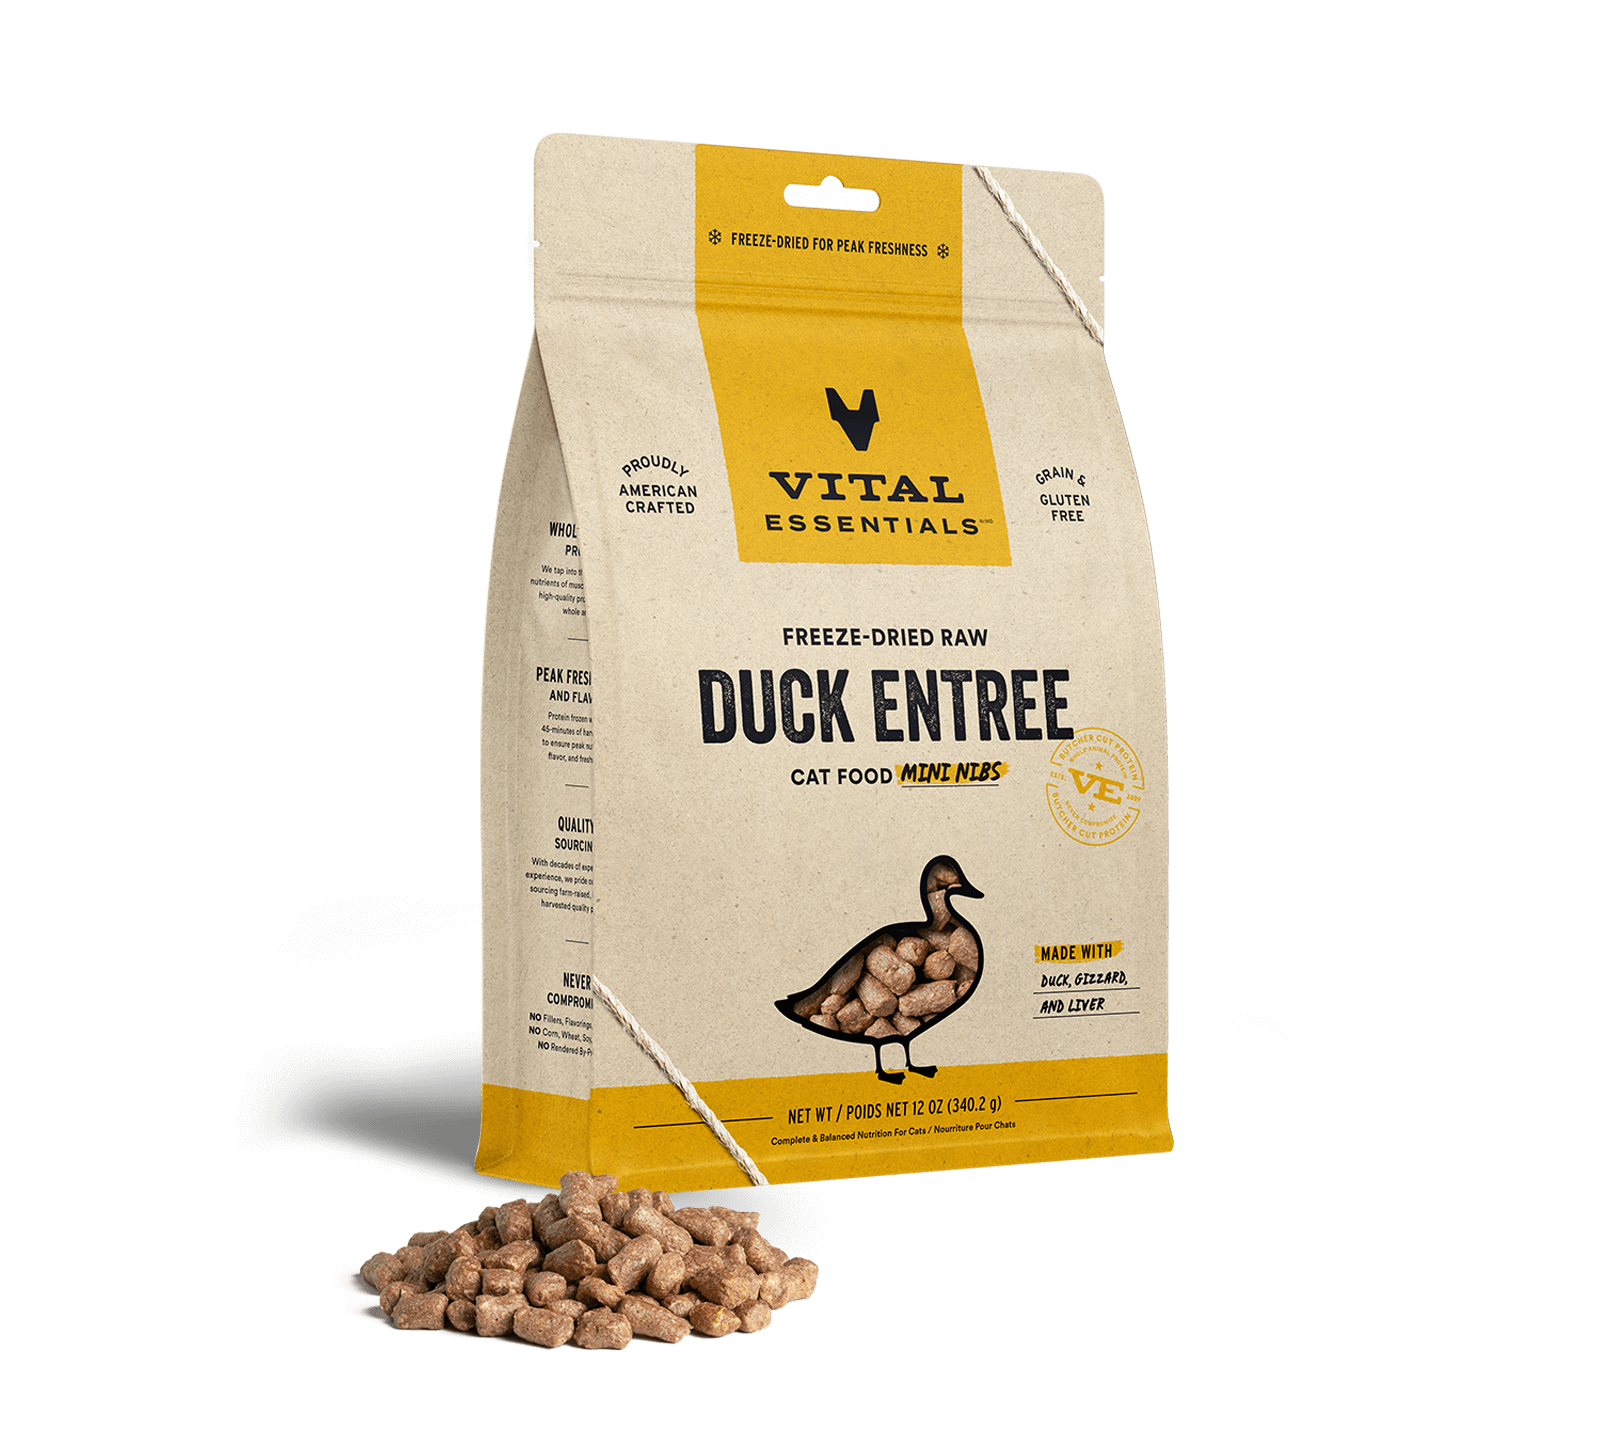 Vital Essentials Freeze-Dried Raw Duck Entree Cat Food Mini Nibs, 12 oz - Healing/First Aid